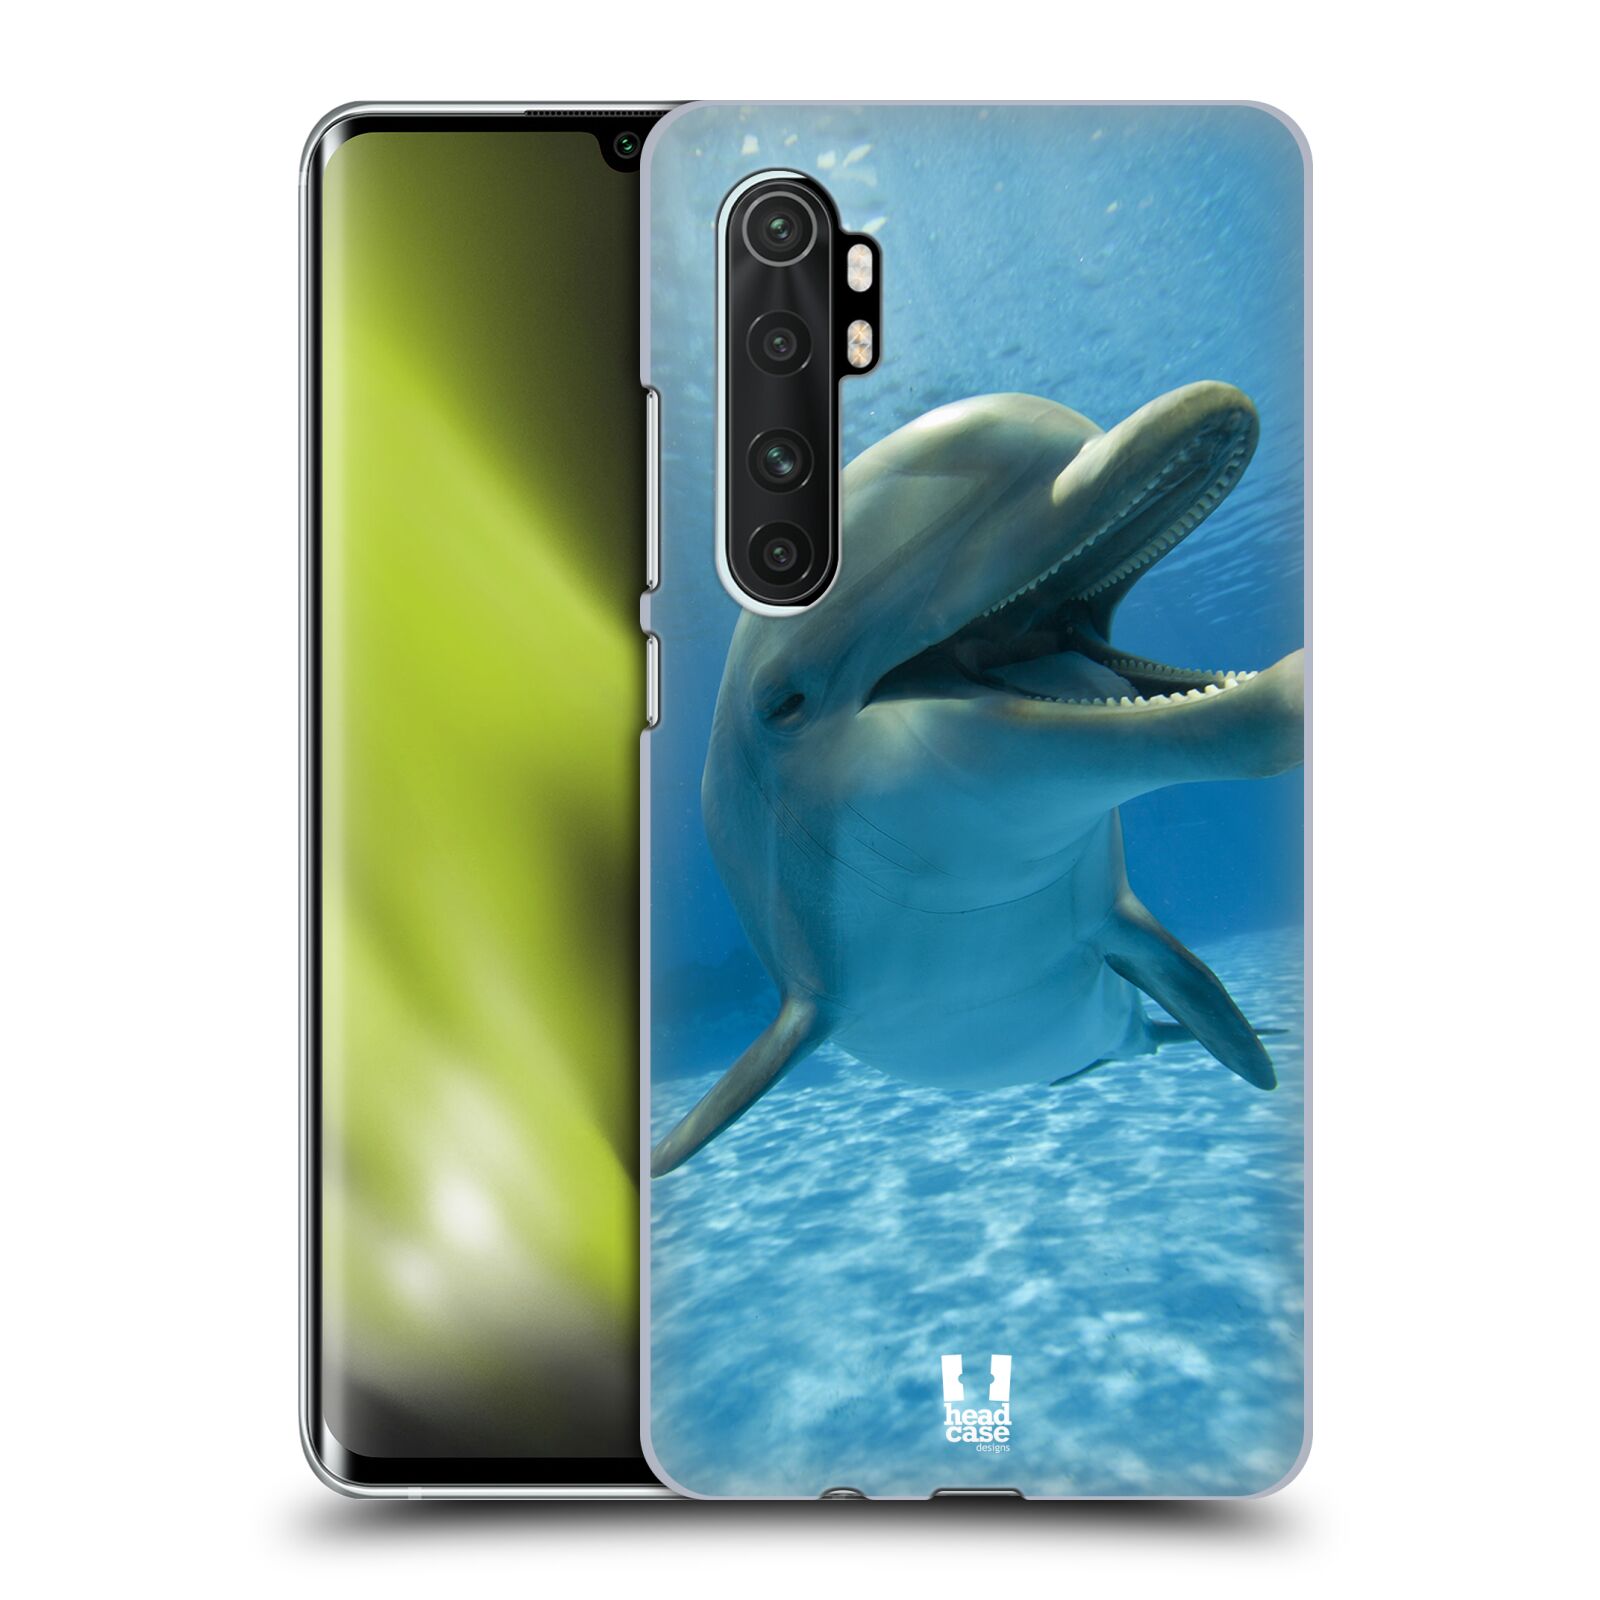 Zadní obal pro mobil Xiaomi Mi Note 10 LITE - HEAD CASE - Svět zvířat delfín v moři